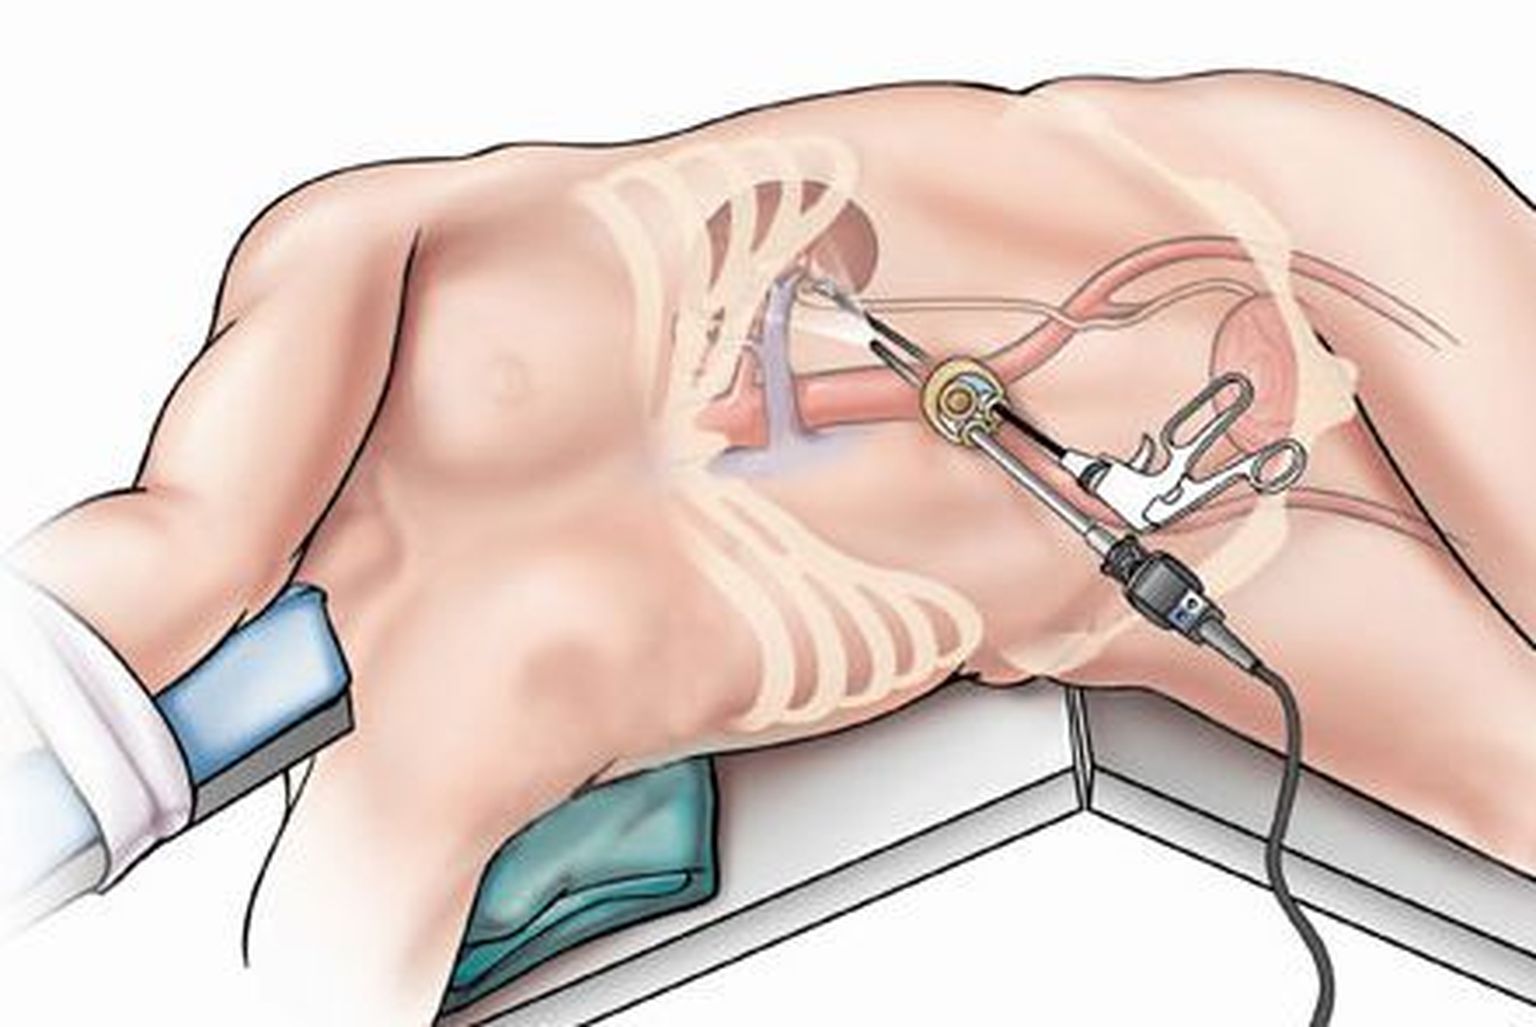 Uuelaadne operatsioon võimaldab organeid eemaldada naba kaudu